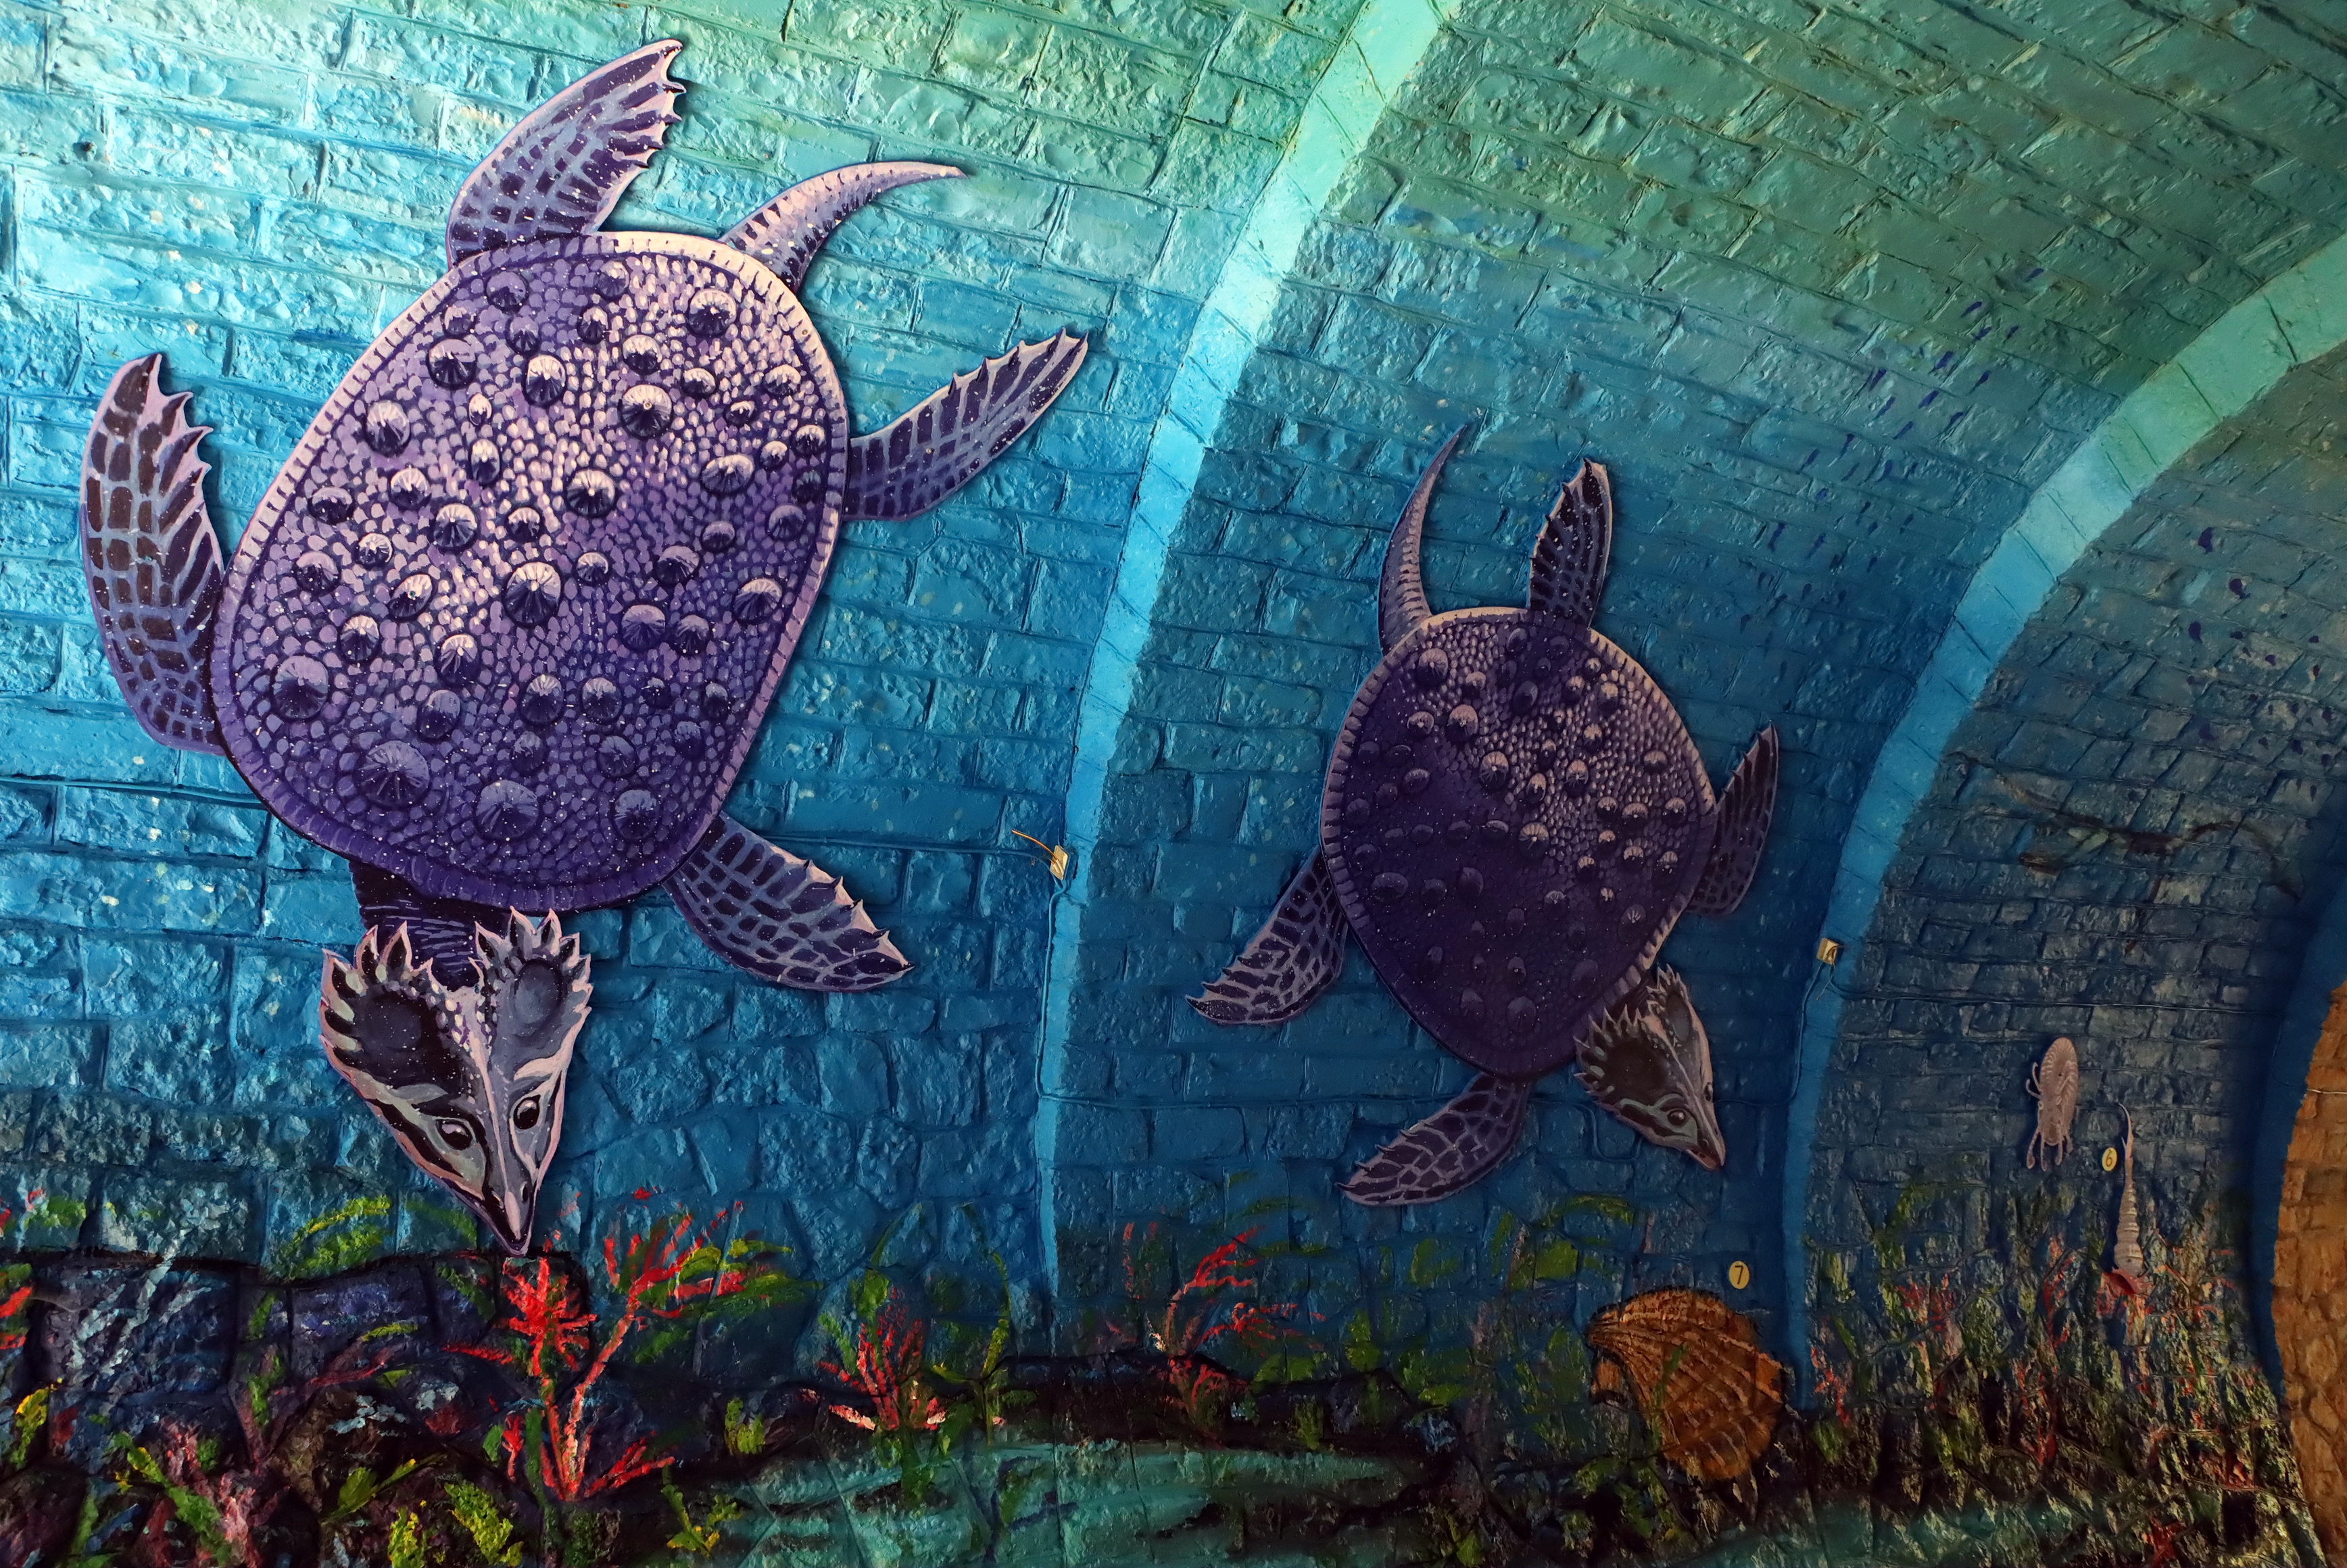 Újabb izgalmas falfestmény a Balatonnál: A veszprémi viadukt alagútjába festettek óriás akváriumot